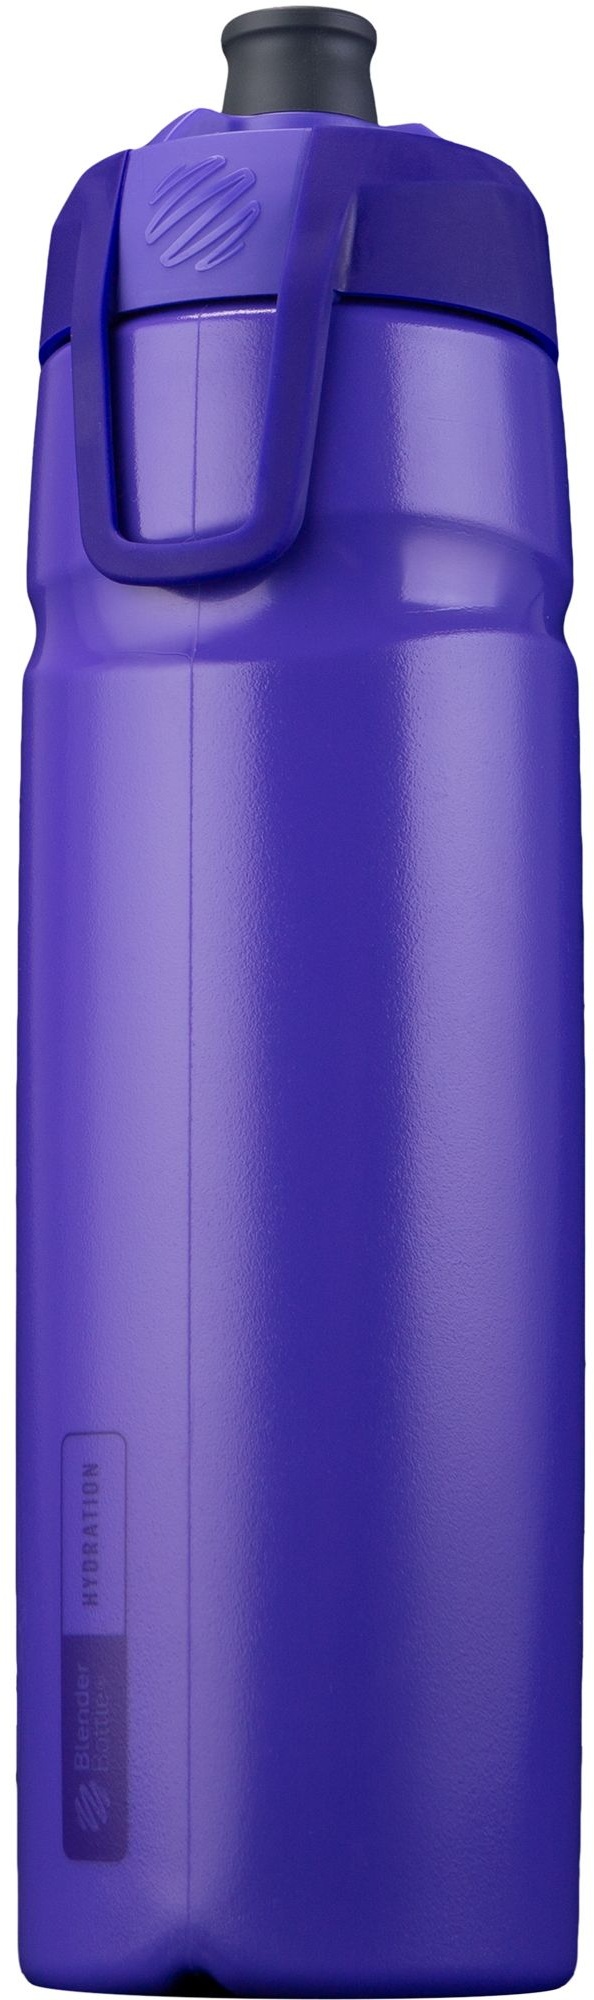 Halex Sports (940ml) - Innovatives Design und Strohhalm für aufrechtes Trinken ultra violet 1 St lila